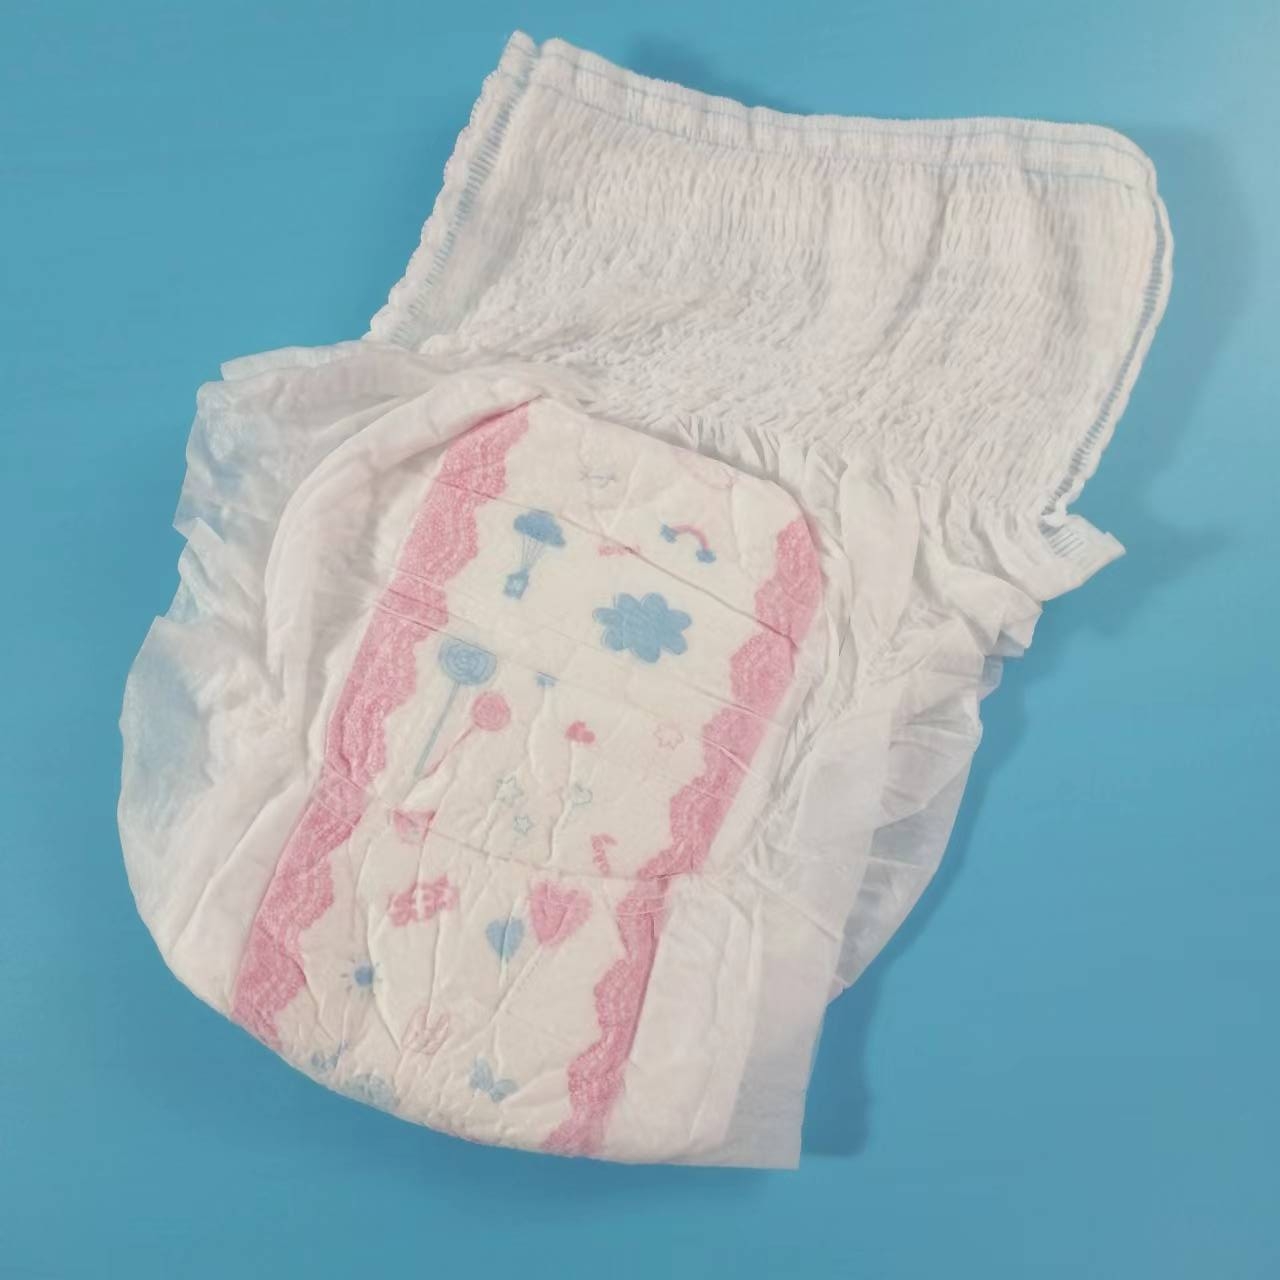 Quần vệ sinh cao cấp loại vô tư siêu thoải mái cotton nguyên chất vệ sinh Quần kinh nguyệt nữ mẹ mới sử dụng